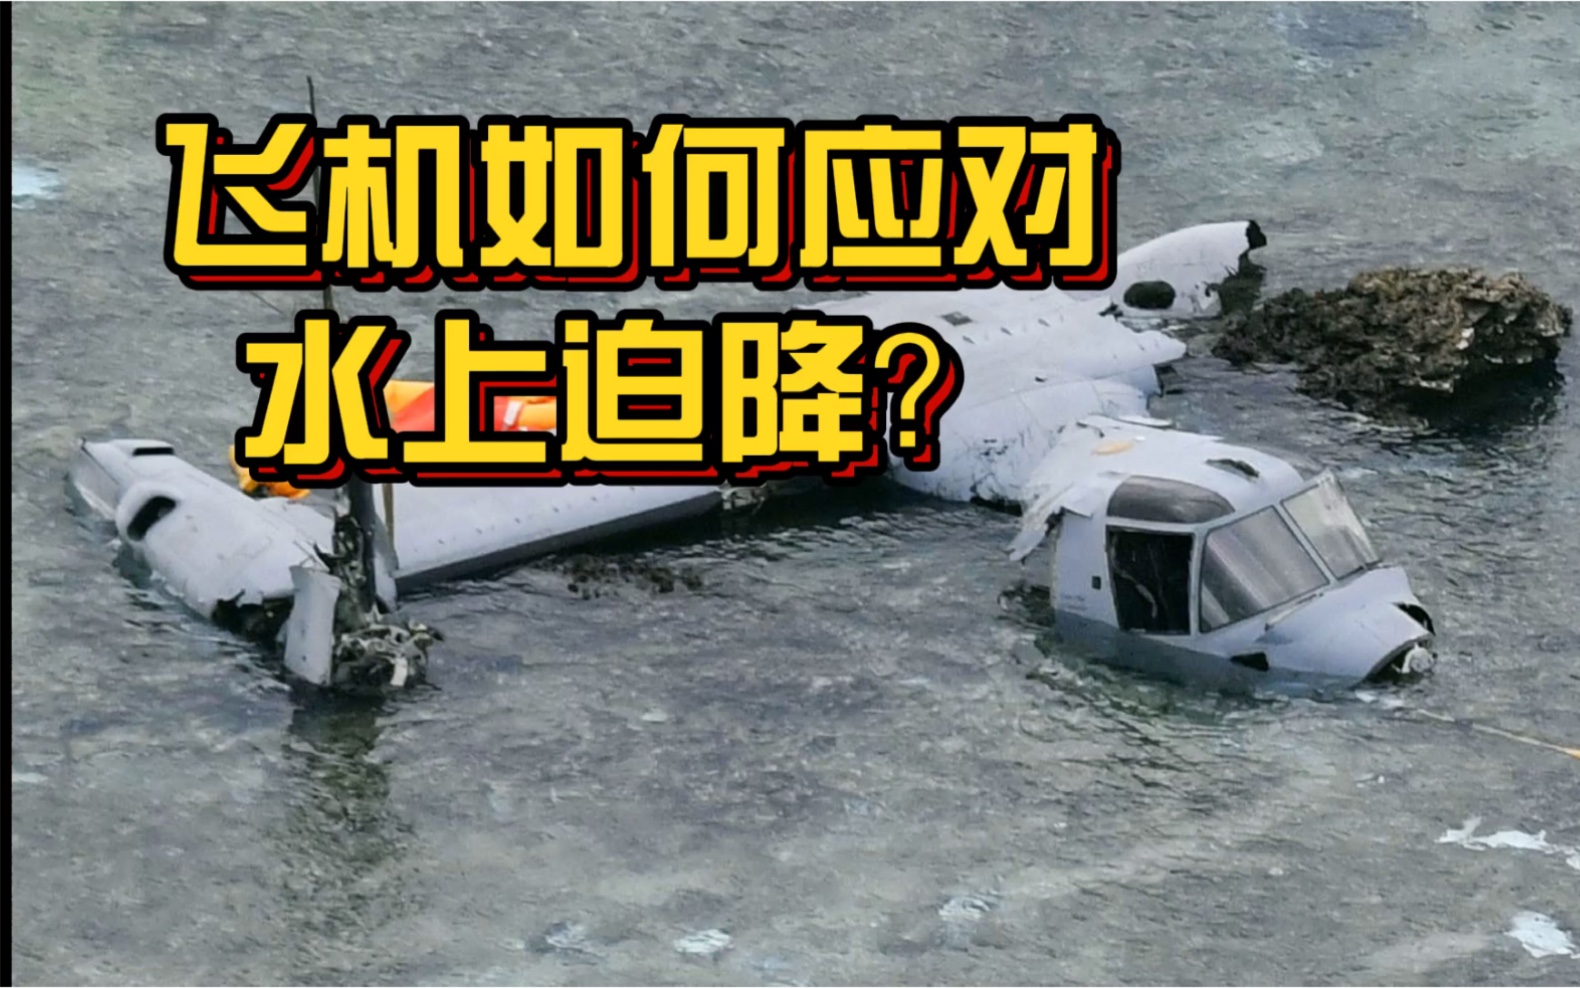 安顺公交坠湖酿成惨剧,飞机水上迫降能否幸免于难?